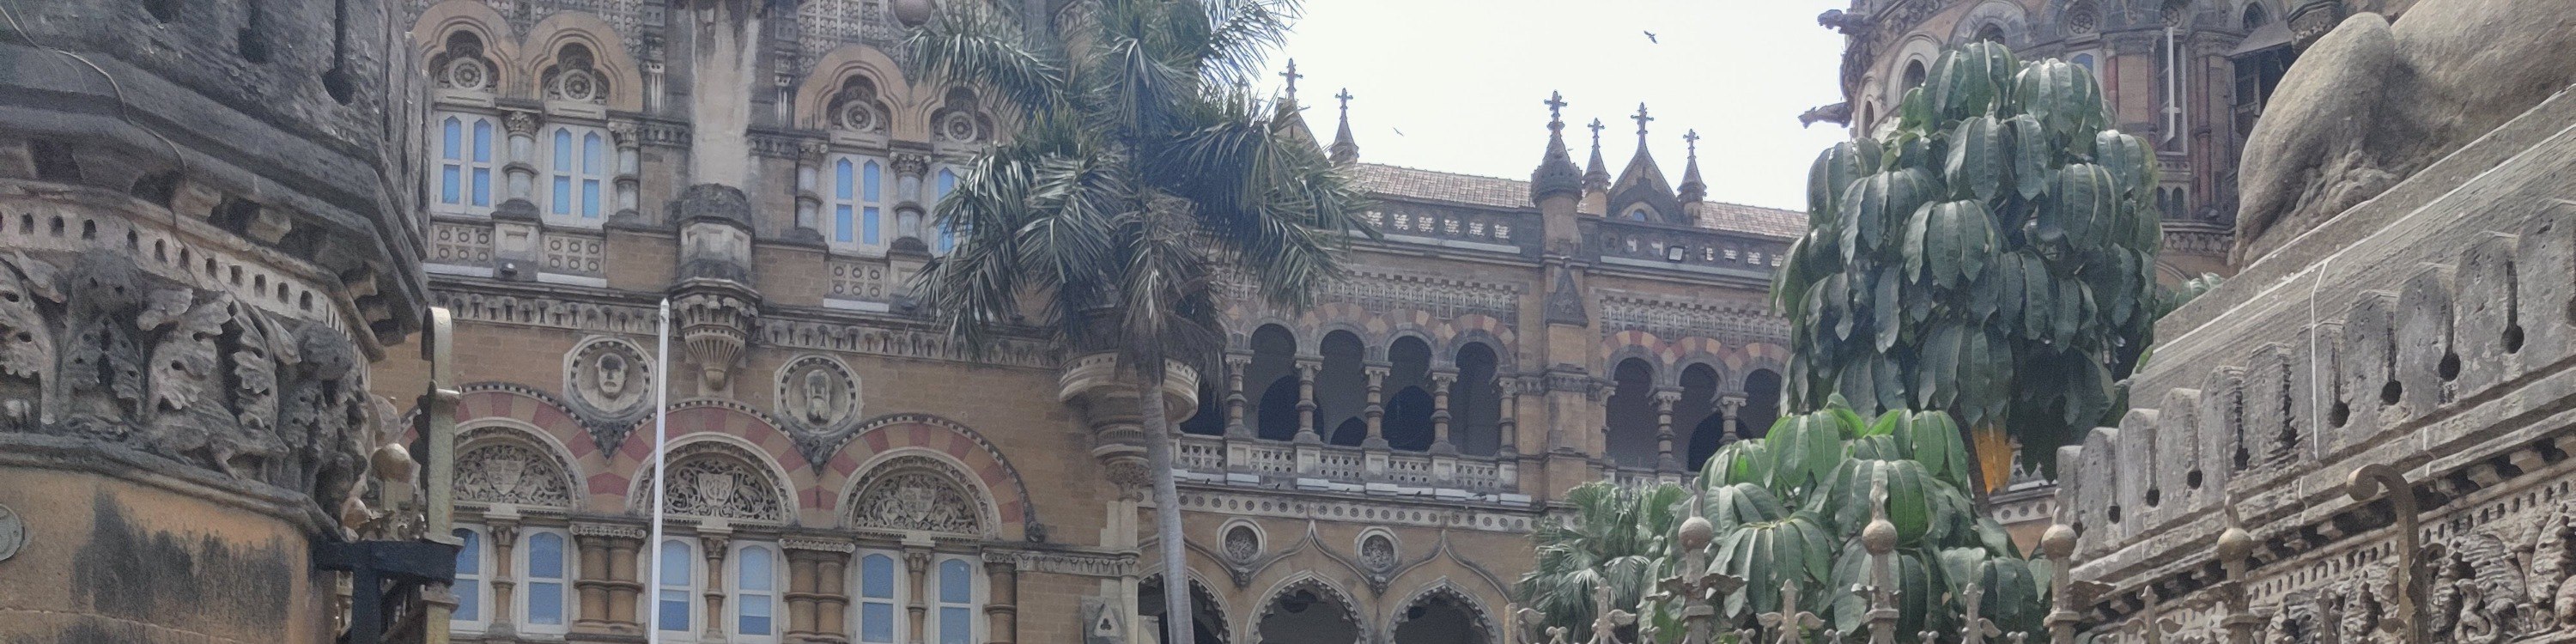 孟買城市奇觀私人觀光探索